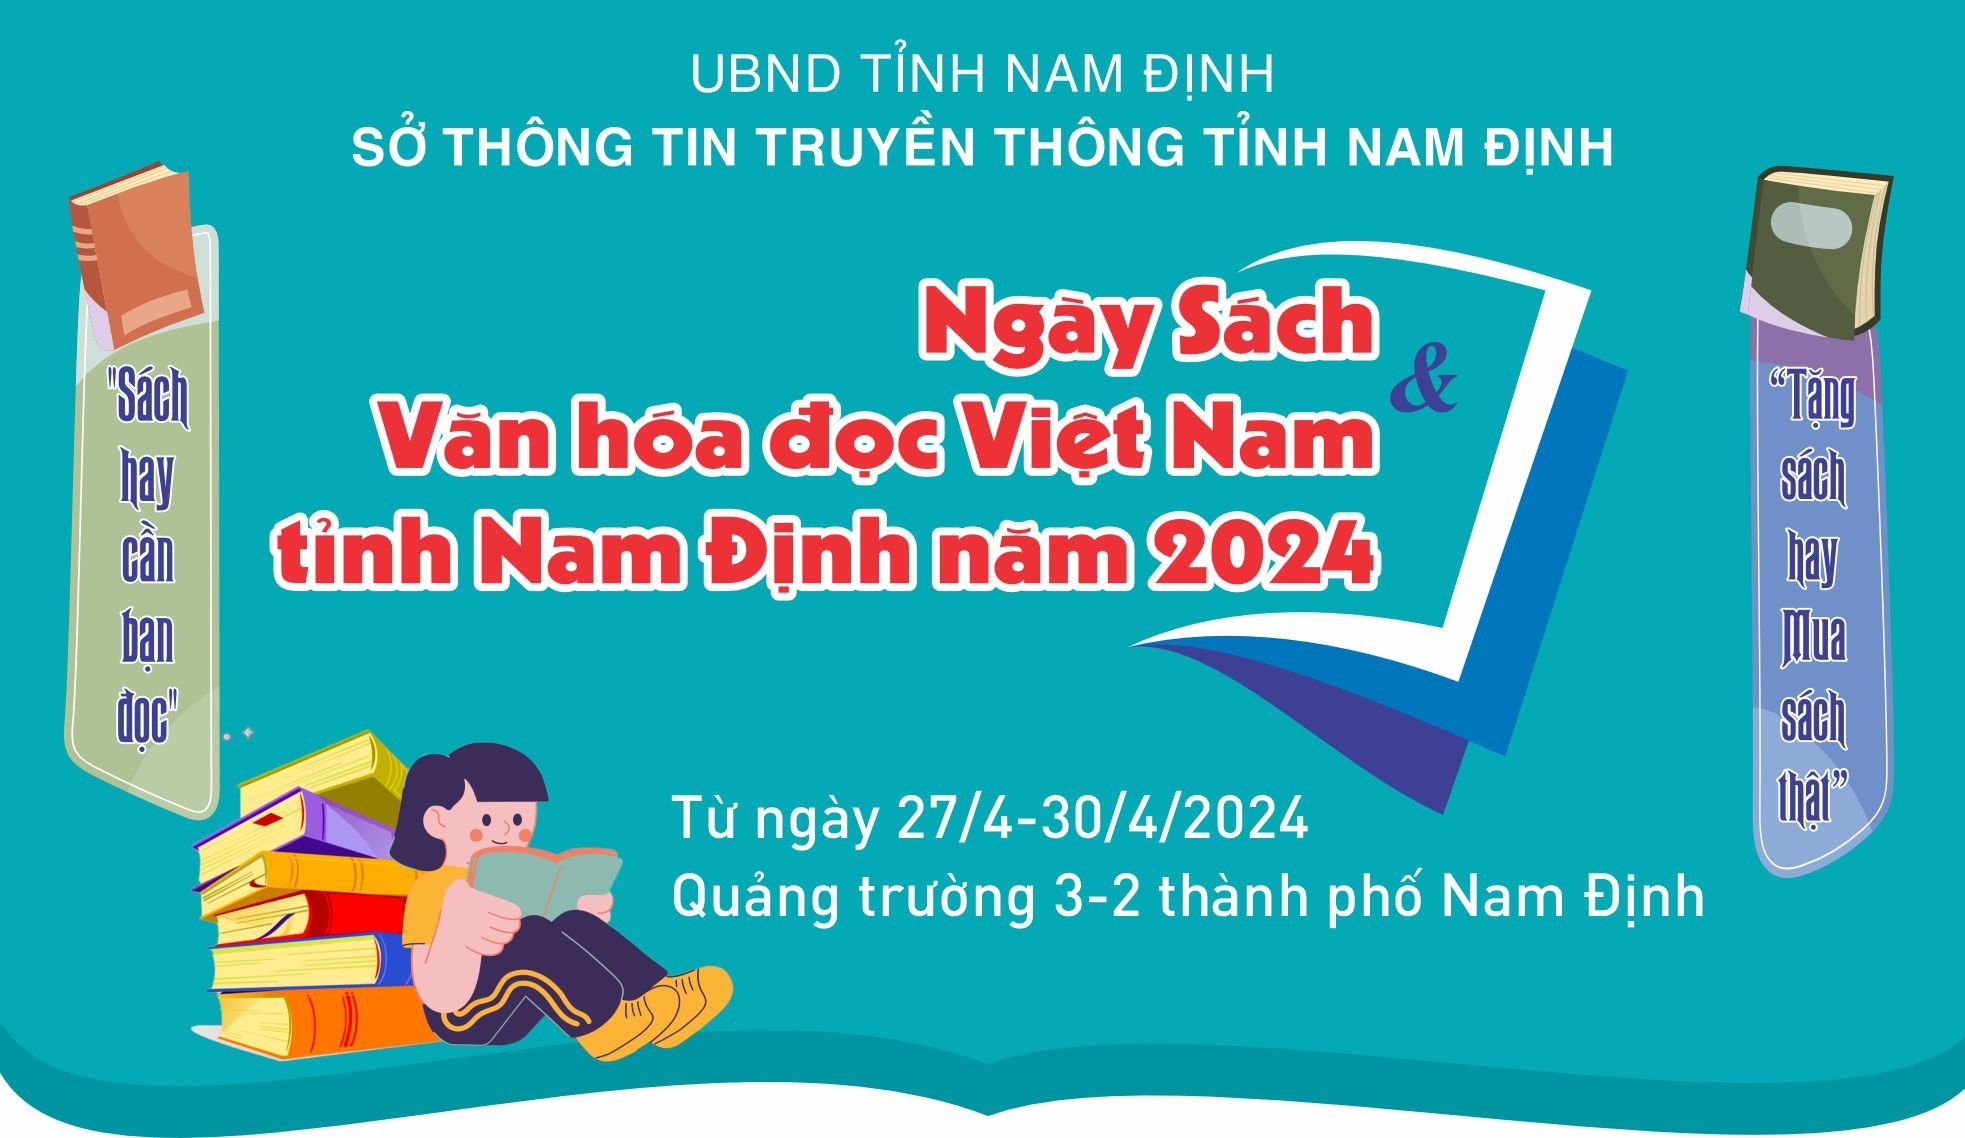 Kế hoạch tổ chức Ngày Sách và Văn hóa đọc Việt Nam tỉnh Nam Định năm 2024